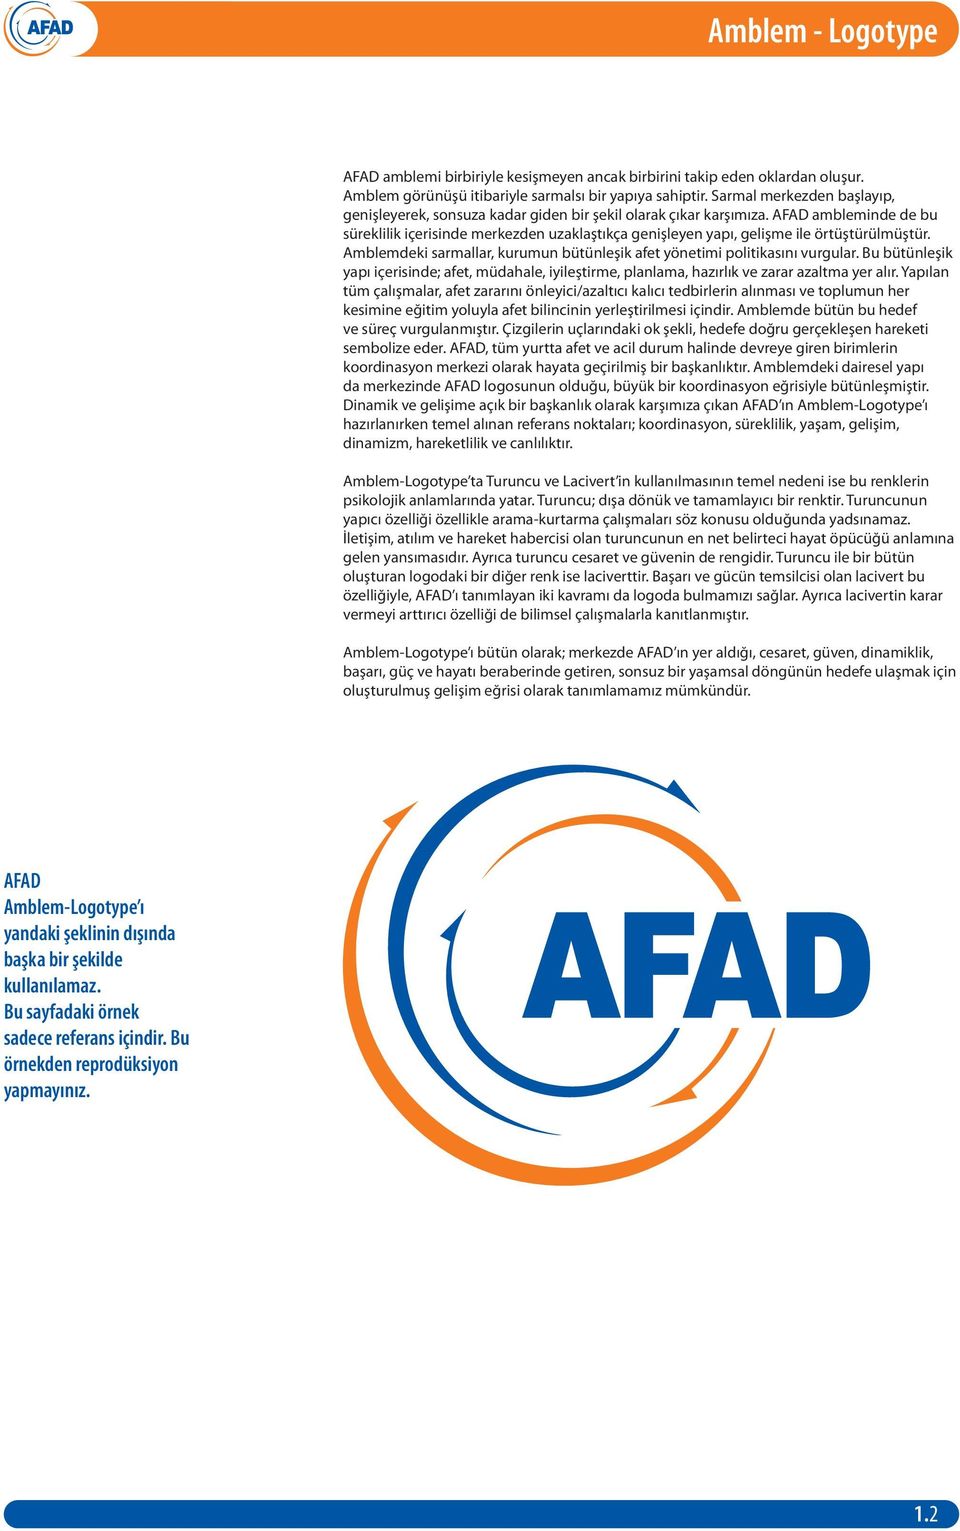 AFAD ambleminde de bu süreklilik içerisinde merkezden uzaklaştıkça genişleyen yapı, gelişme ile örtüştürülmüştür. Amblemdeki sarmallar, kurumun bütünleşik afet yönetimi politikasını vurgular.